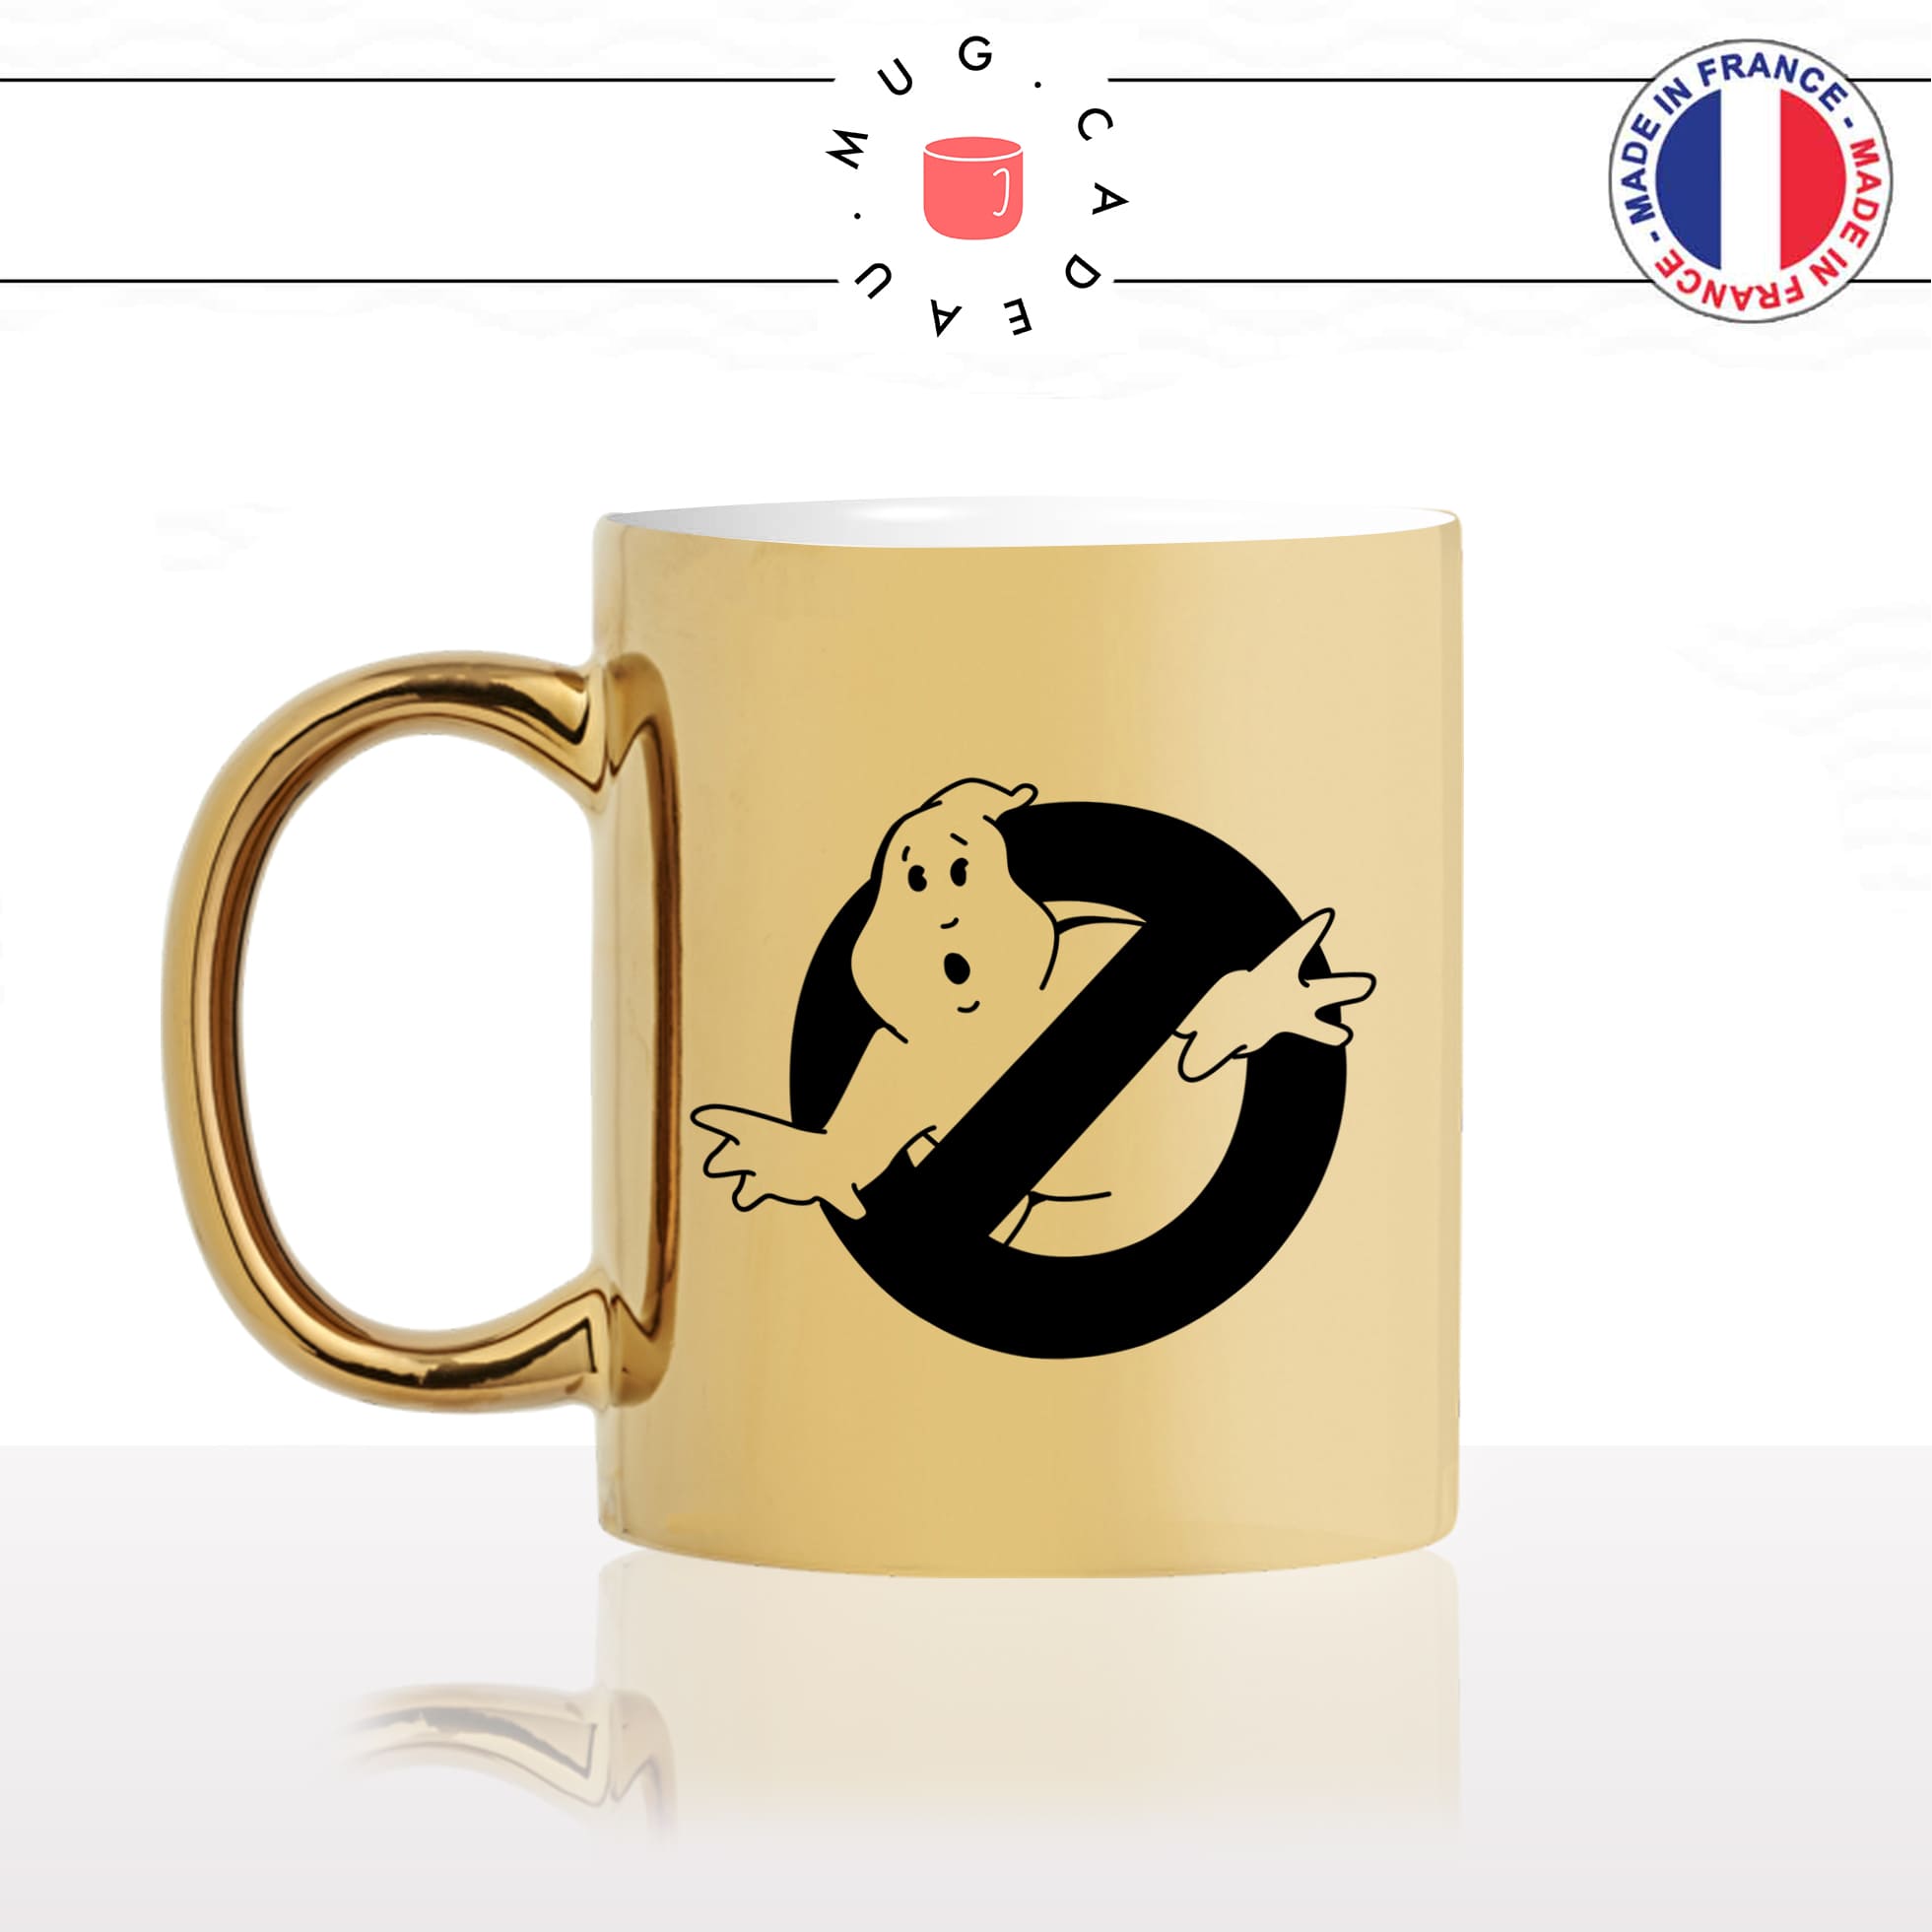 mug-tasse-doré-or-gold-logo-film-culte-ghost-buster-noir-chasseurs-de-fantomes-monstres-humour-fun-idée-cadeau-personnalisé-café-thé